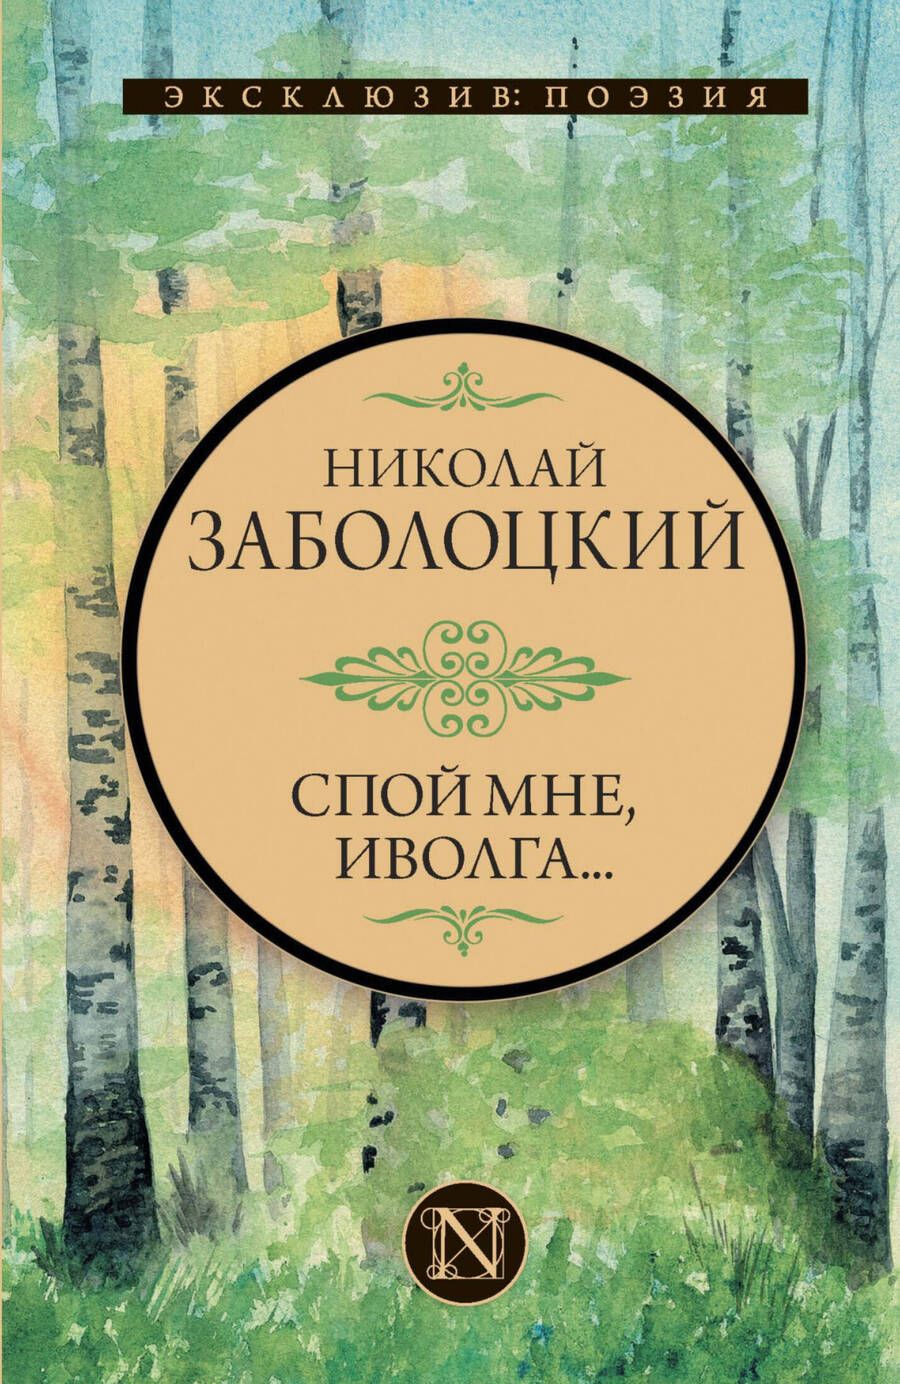 Обложка книги "Заболоцкий: Спой мне, иволга..."